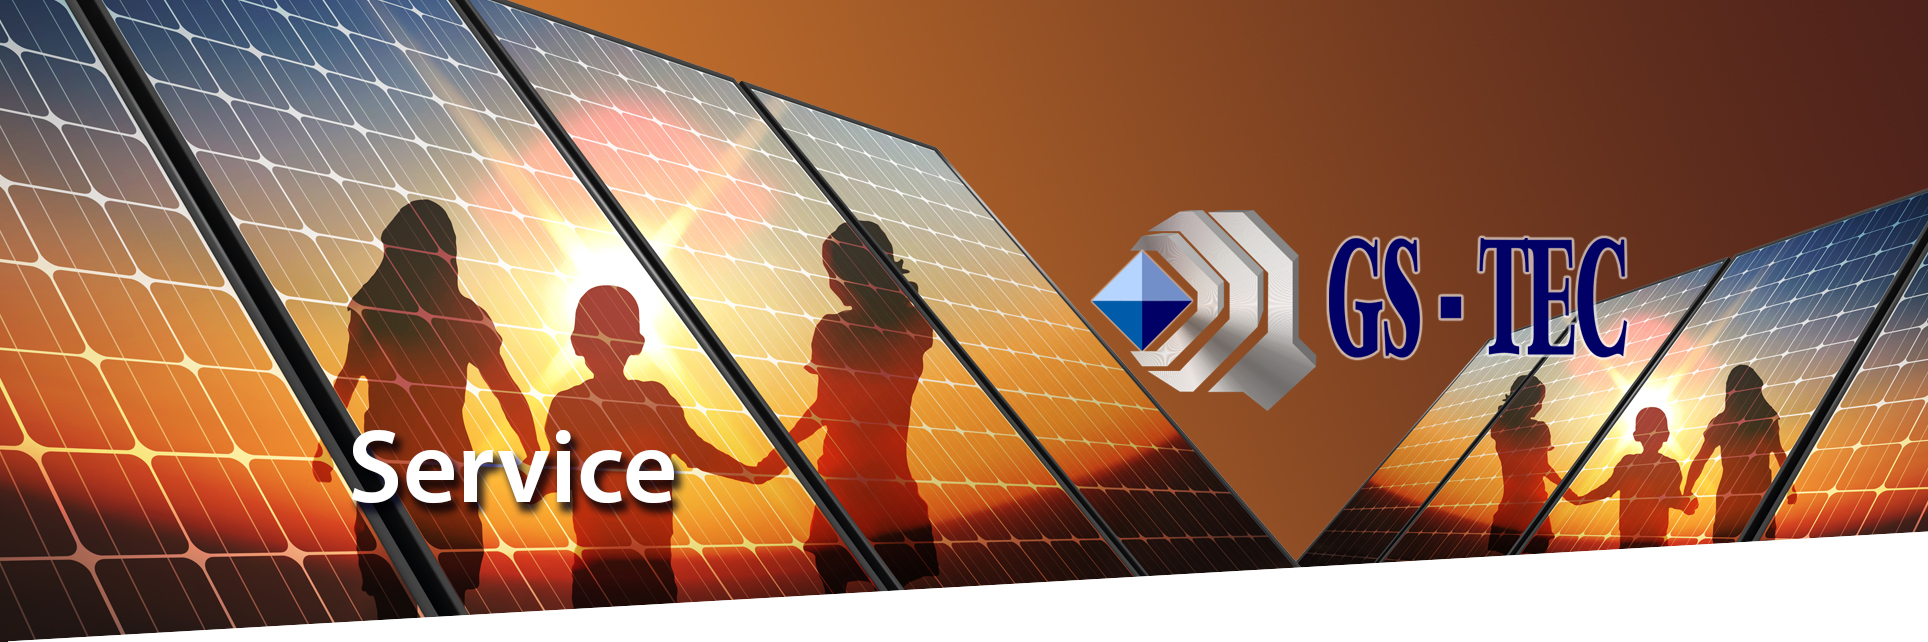 GS TEC Solar